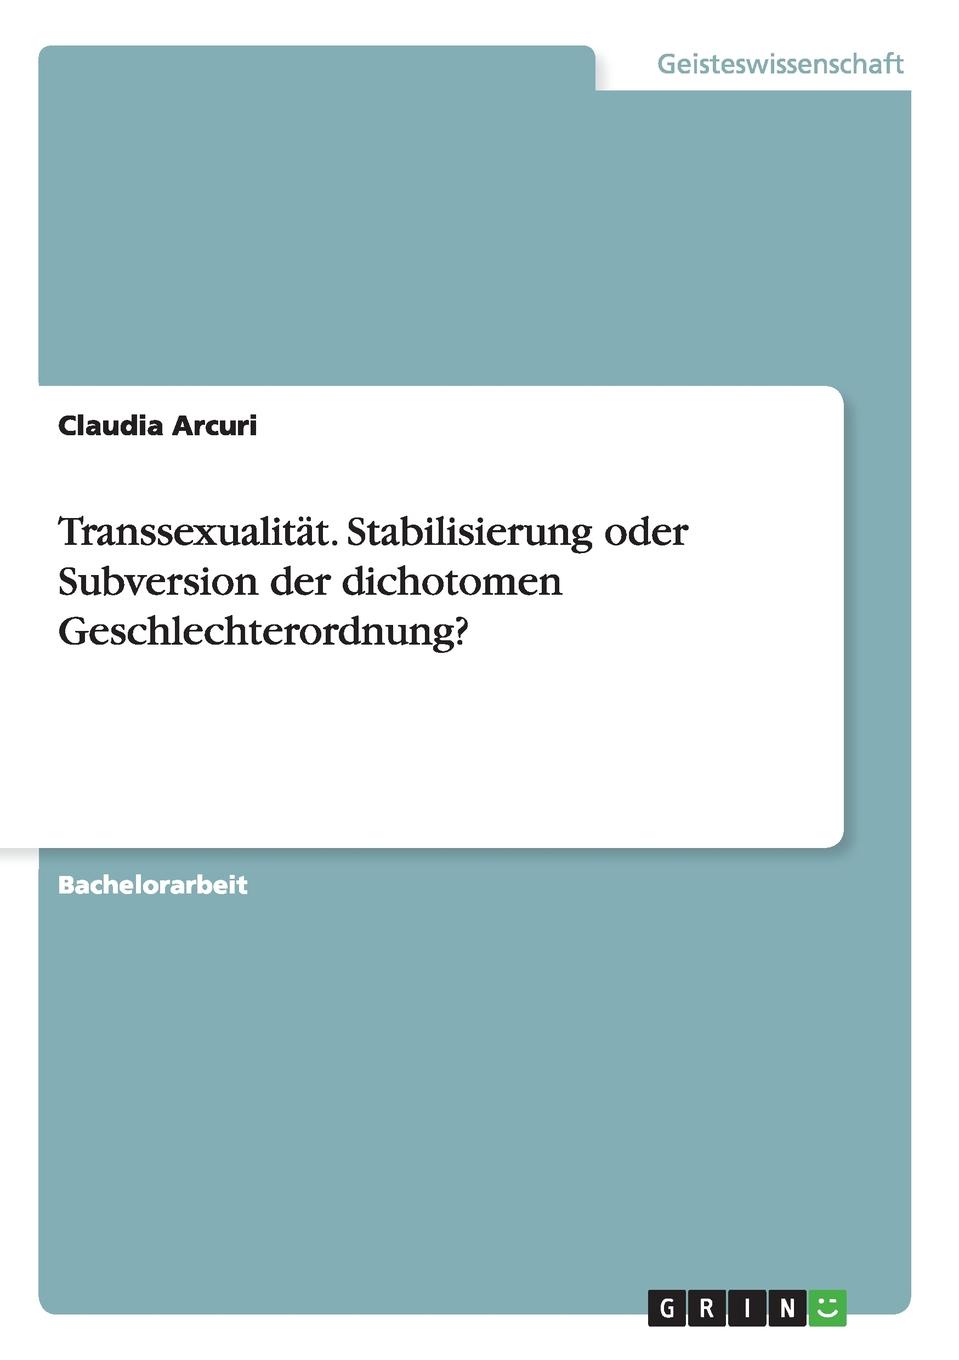 Transsexualitat. Stabilisierung oder Subversion der dichotomen Geschlechterordnung.